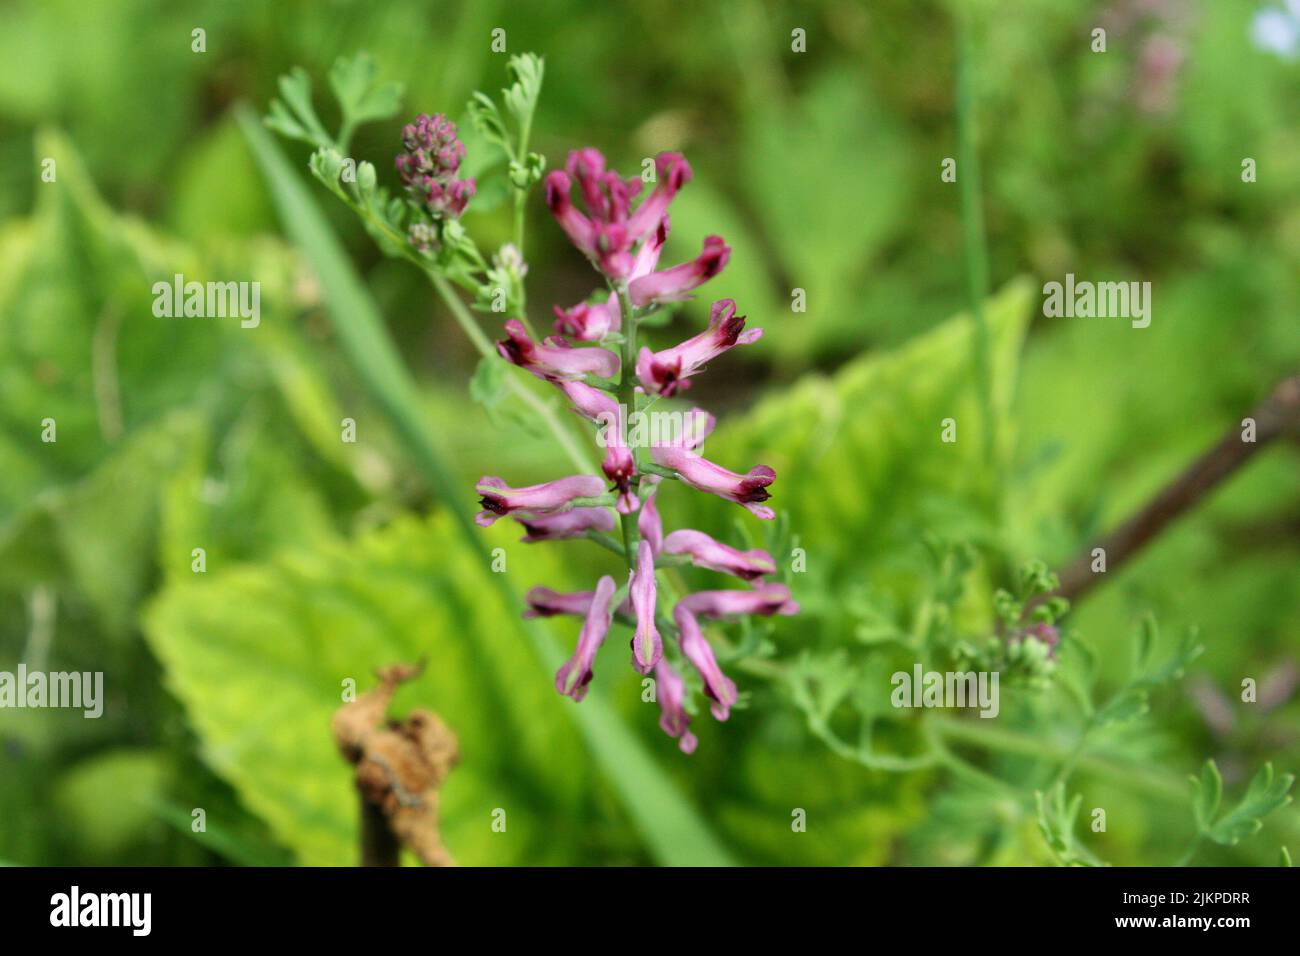 Gewöhnlicher Begasungs- oder Drogenbegasungs- oder Erdrauch (Fumaria officinalis), violette Blüten auf grünem Hintergrund Stockfoto